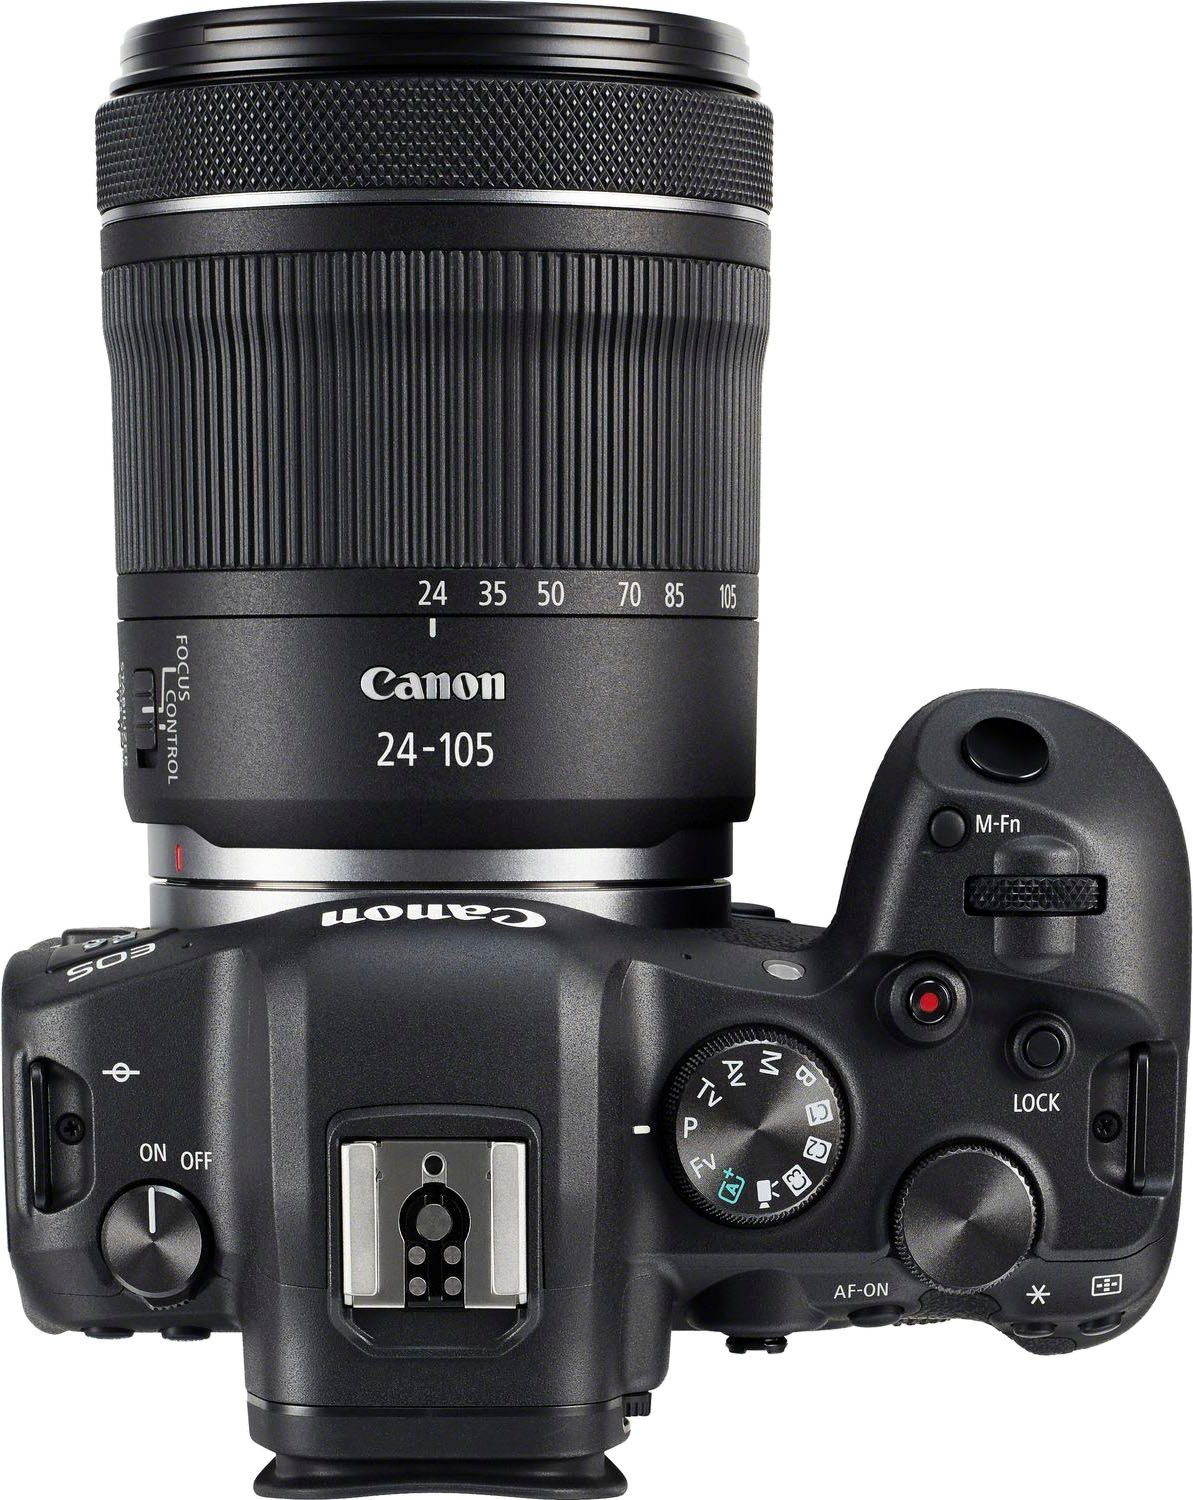 + IS F4-7.1 IS RF R6 F4-7.1 24-105mm 20,1 WLAN EOS (RF 24-105mm STM MP, Bluetooth, Canon STM, (WiFi) Gehäuse Systemkamera